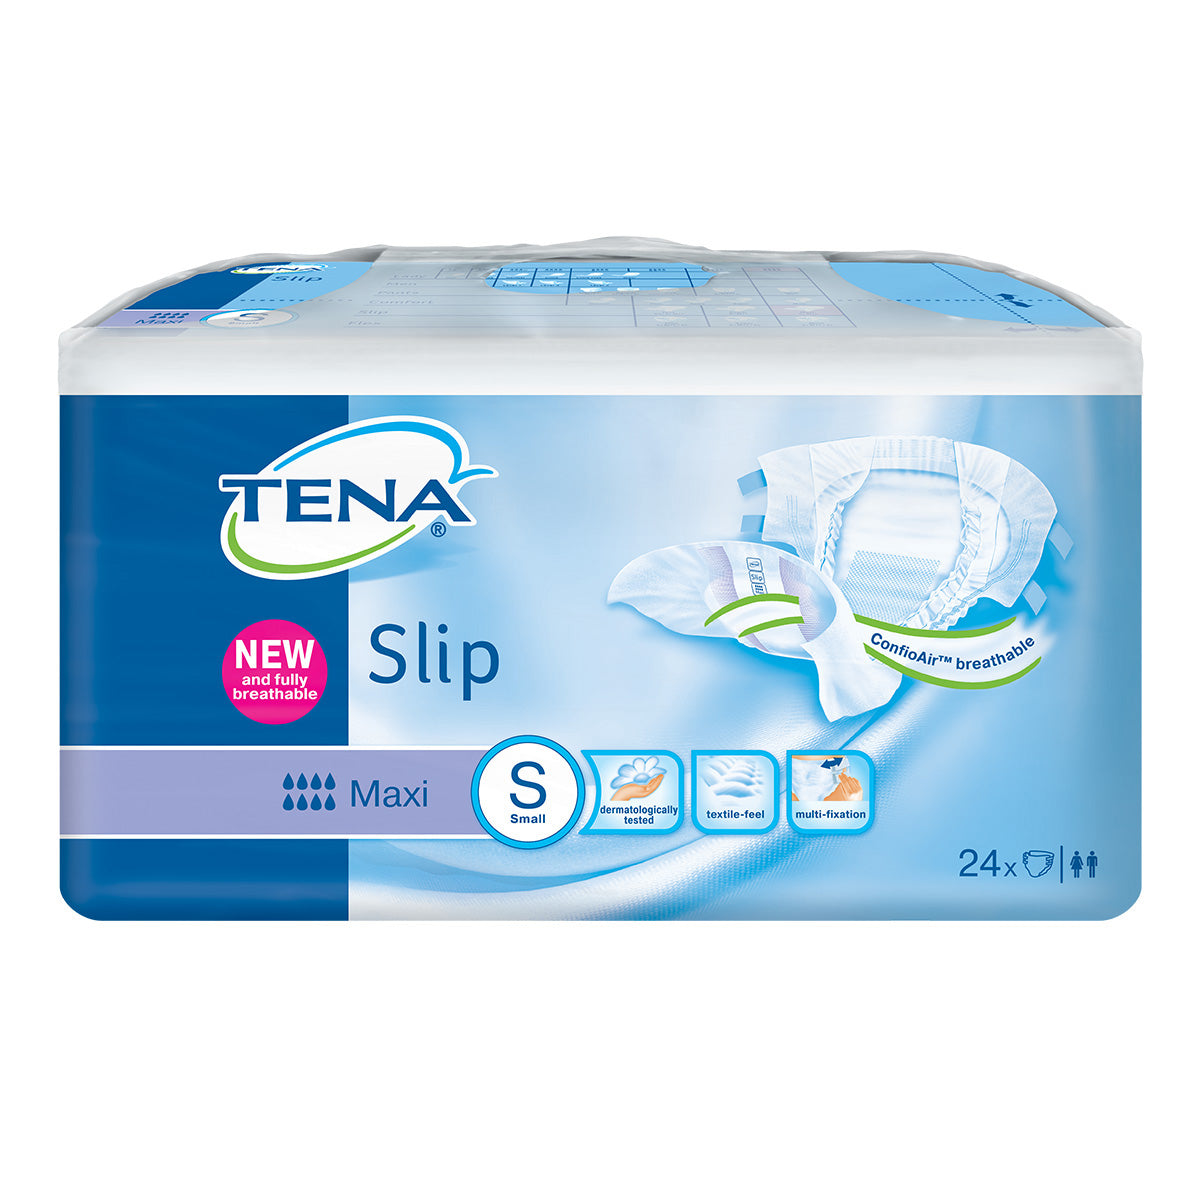 TENA® Slip Maxi Brief, Small